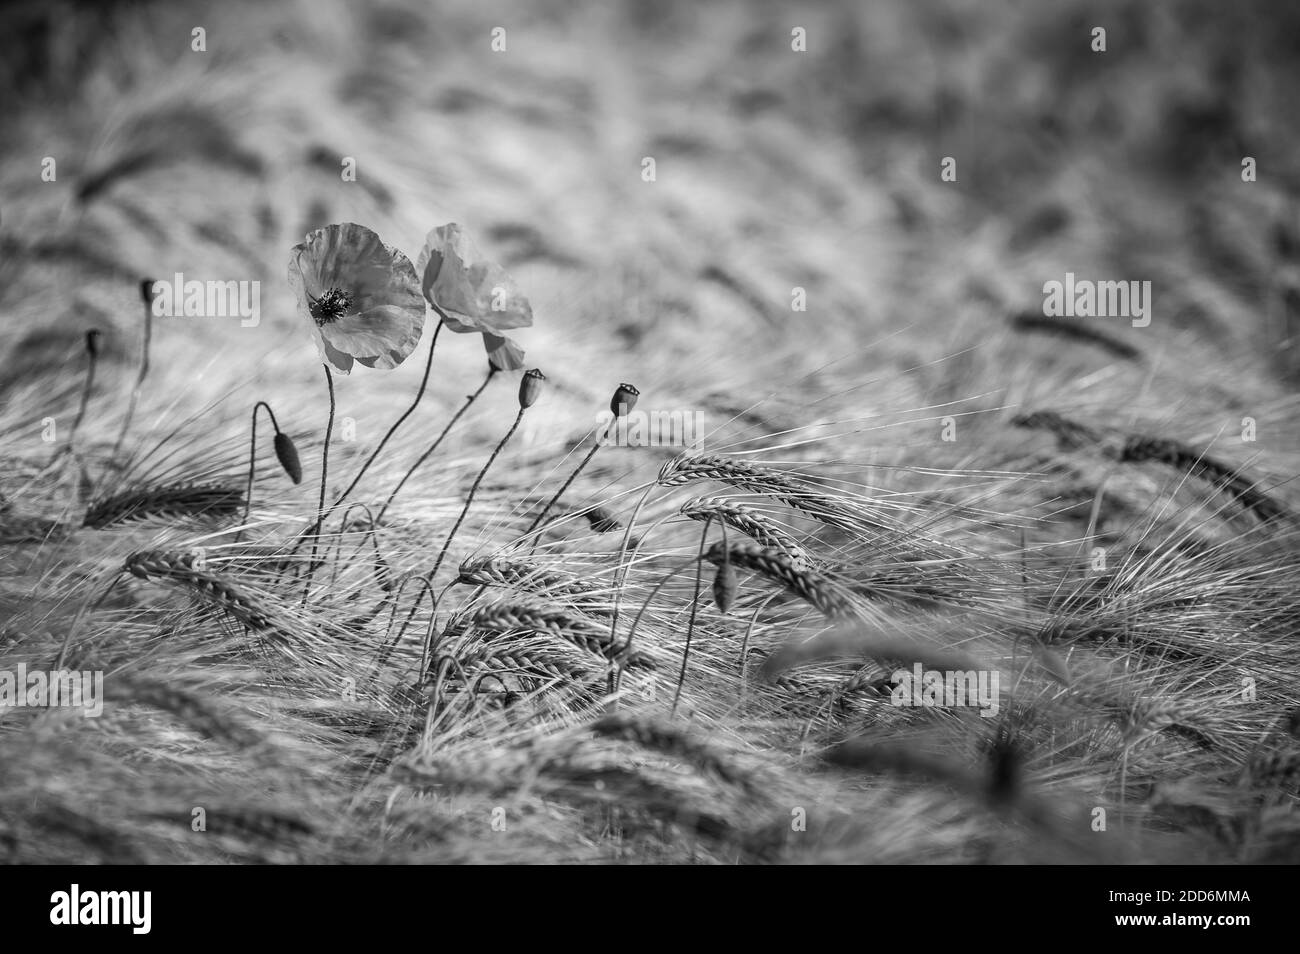 Coquelicots dans un champ de blé du parc national de Northumberland, près de Hexham, Angleterre, Royaume-Uni, Europe Banque D'Images